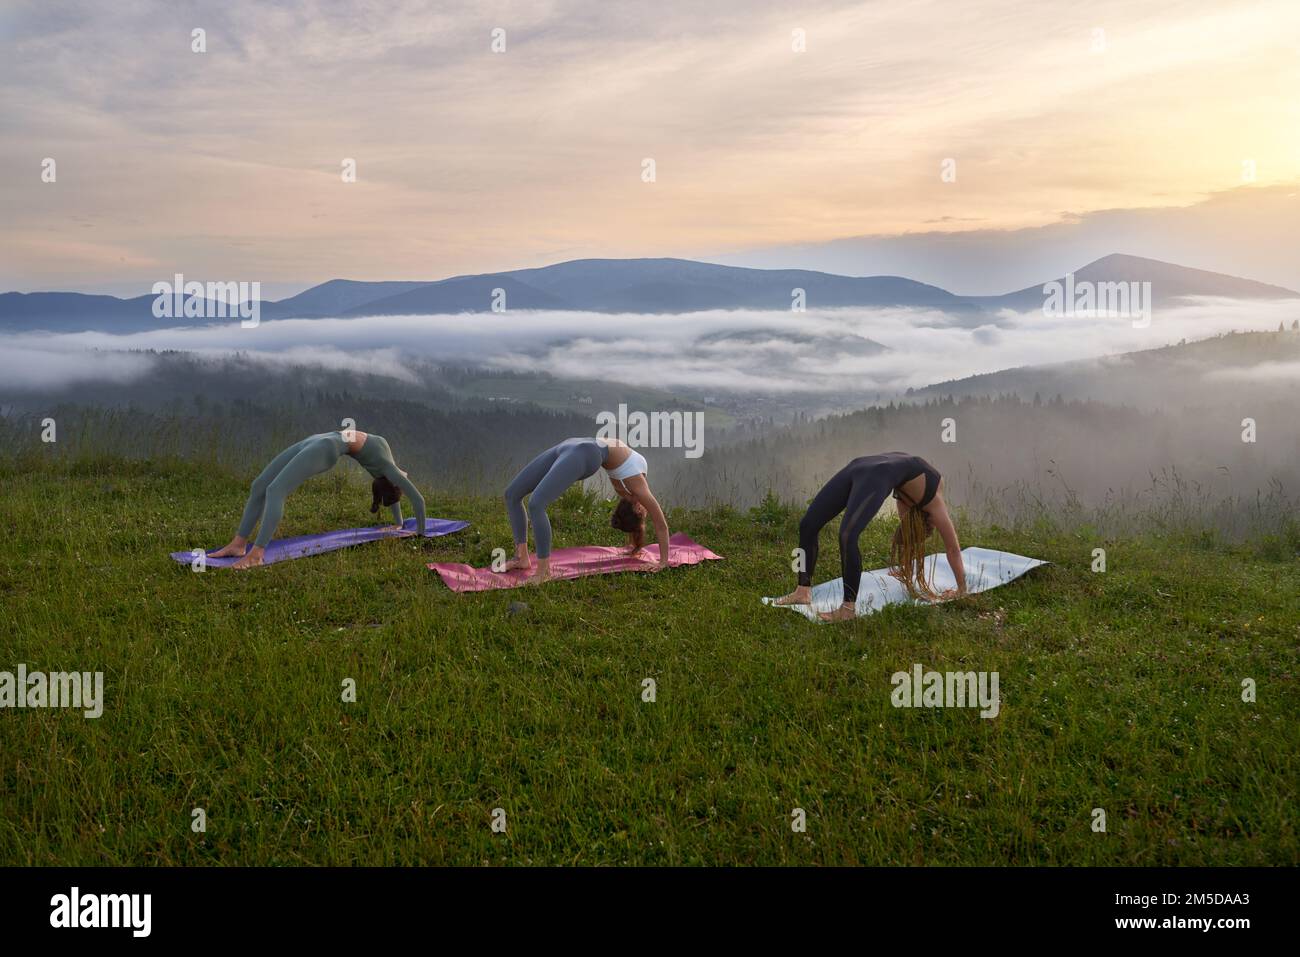 Gesunde Passform Frauen in Sportkleidung Stretching Körper auf Yoga-Matte inmitten der wunderschönen Sommerberge. Drei junge Damen verbringen Freizeit für Aktivitäten im Freien. Stockfoto